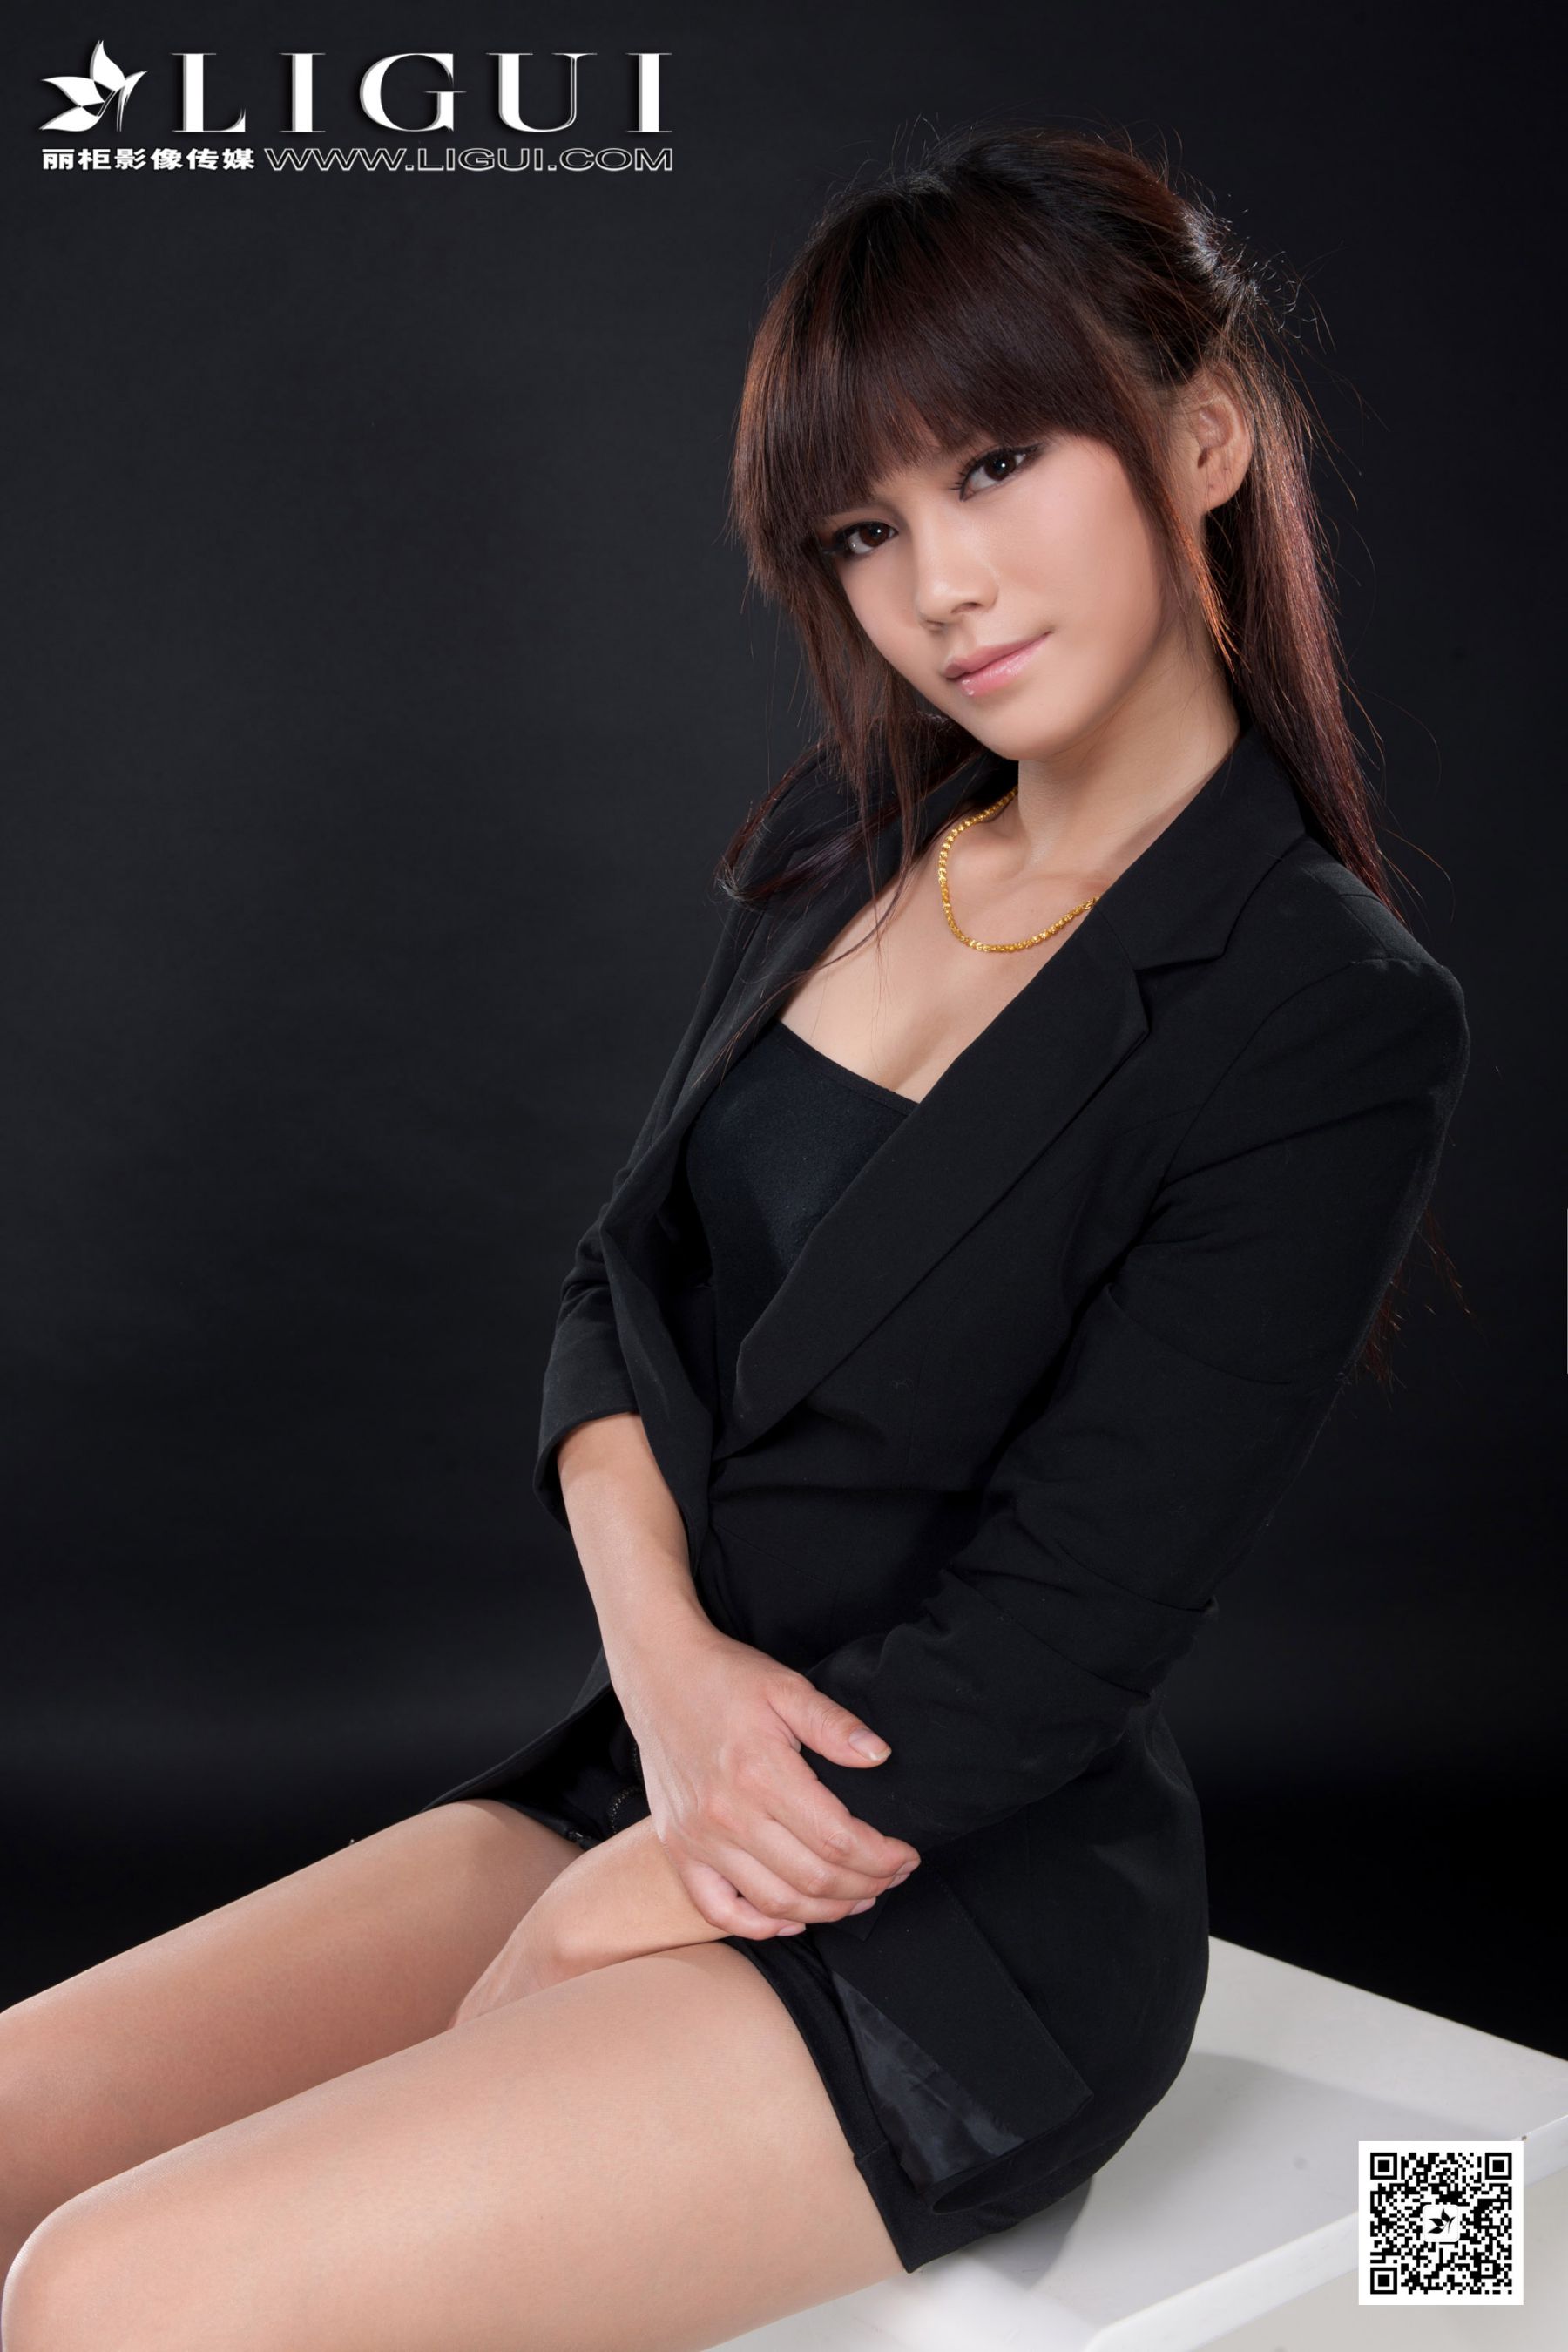 [丽柜贵足LiGui] Model Qingqing “Beauty in Professional Dress with Silk Feet and High Heels” beautiful legs and jade feet photo pictures